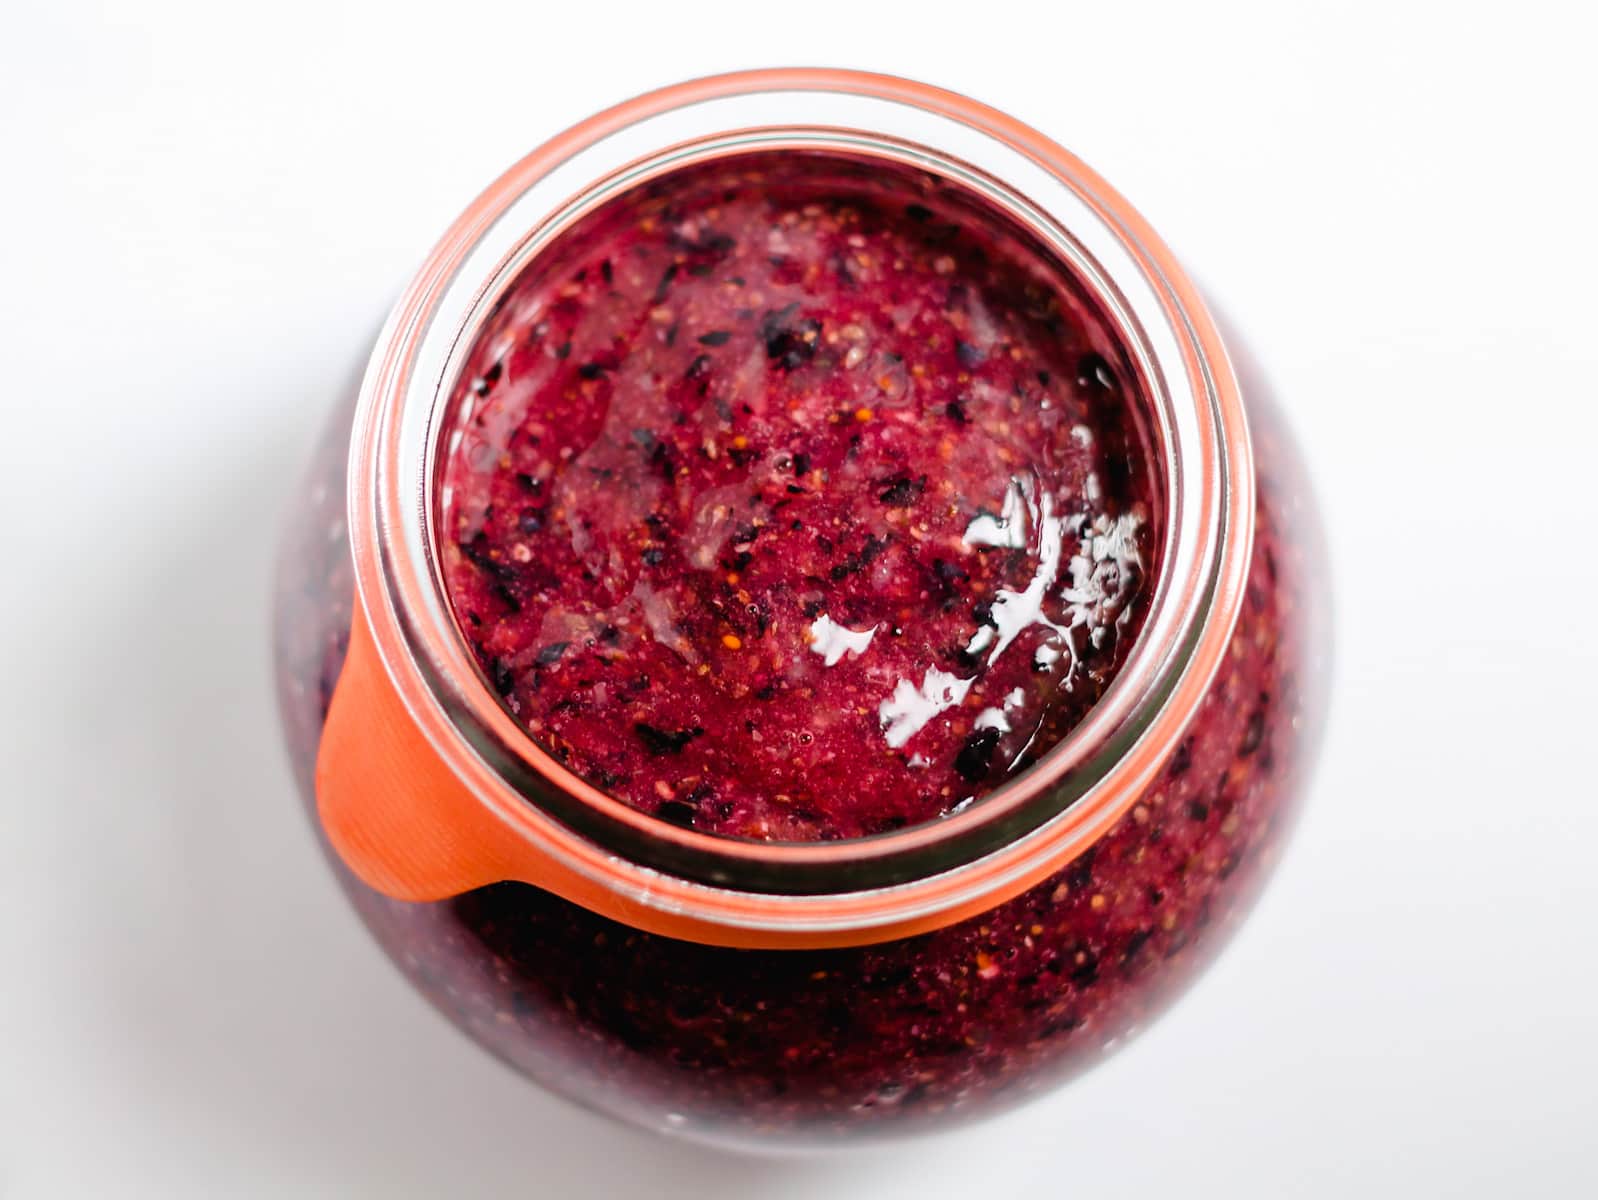 a jar of freshly blended blueberry chia jam.